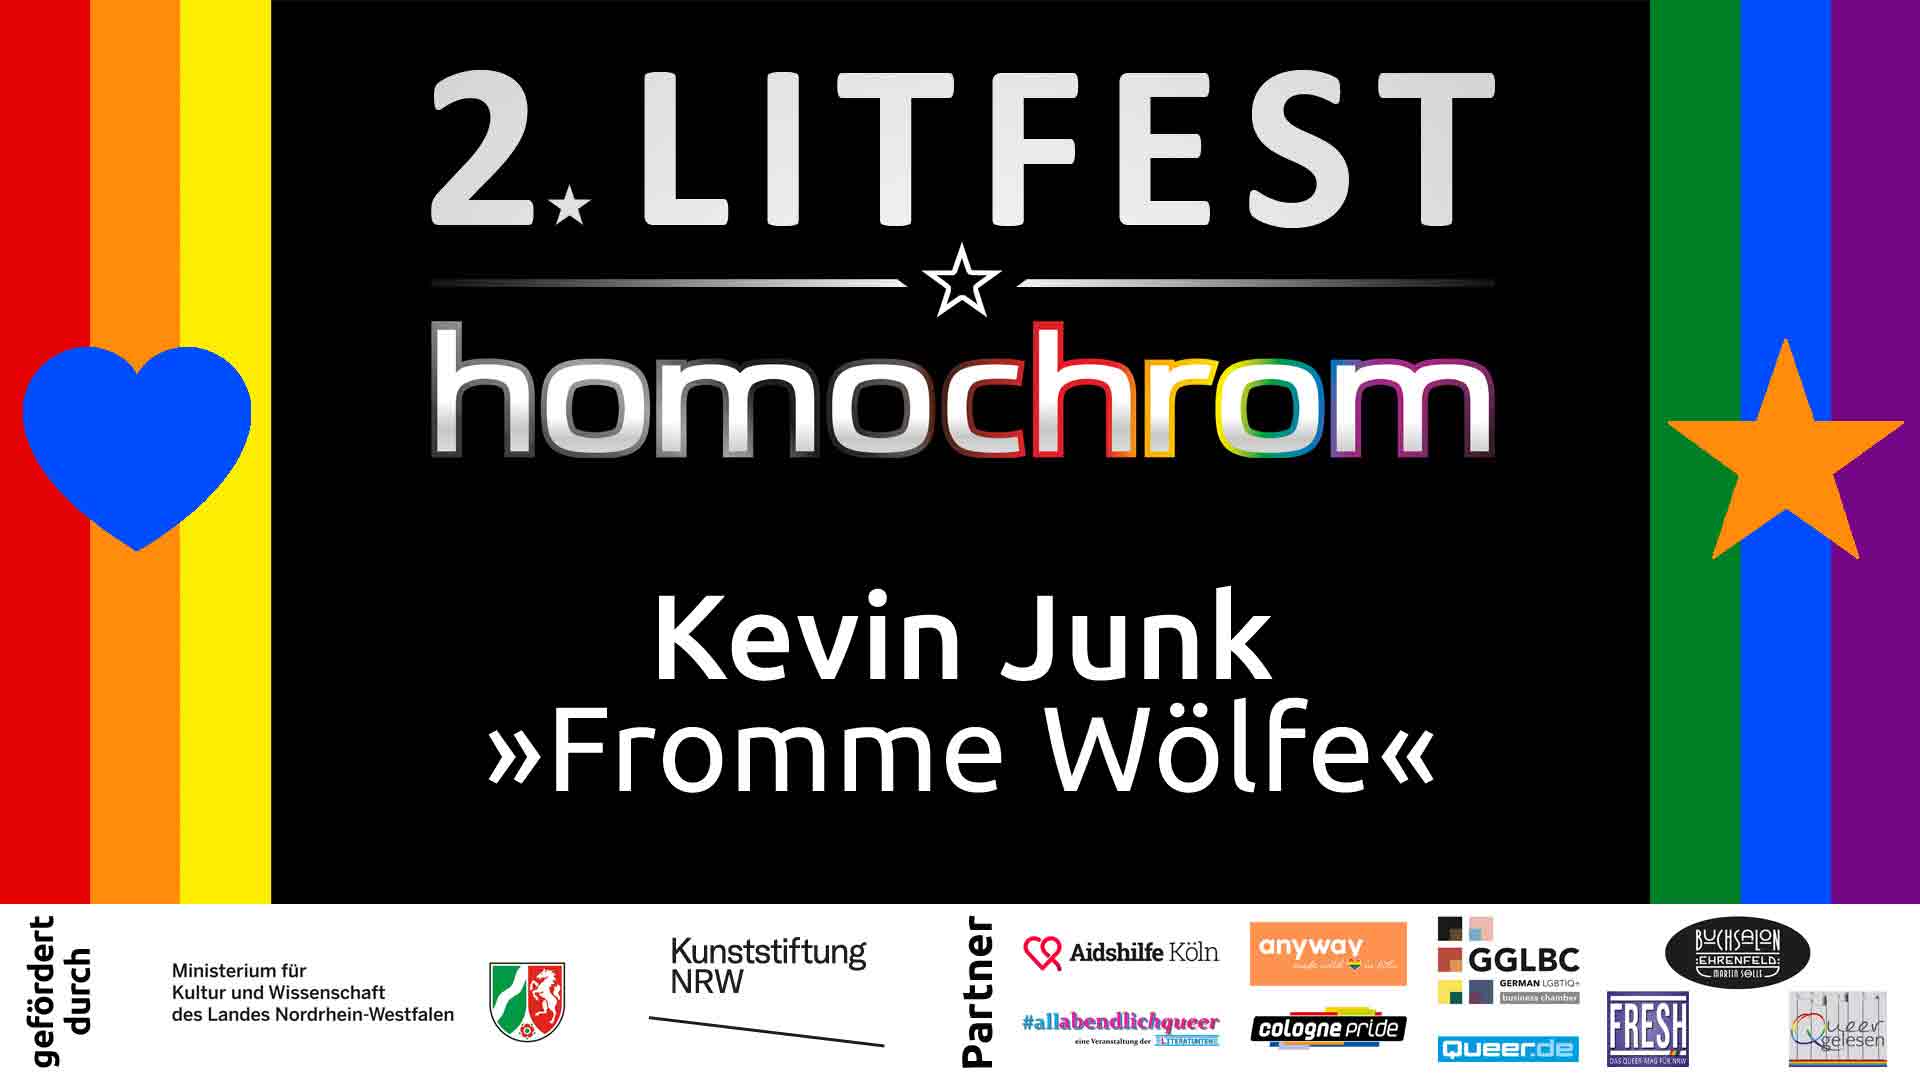 Youtube Video, Kevin Junk, 2. Litfest homochrom